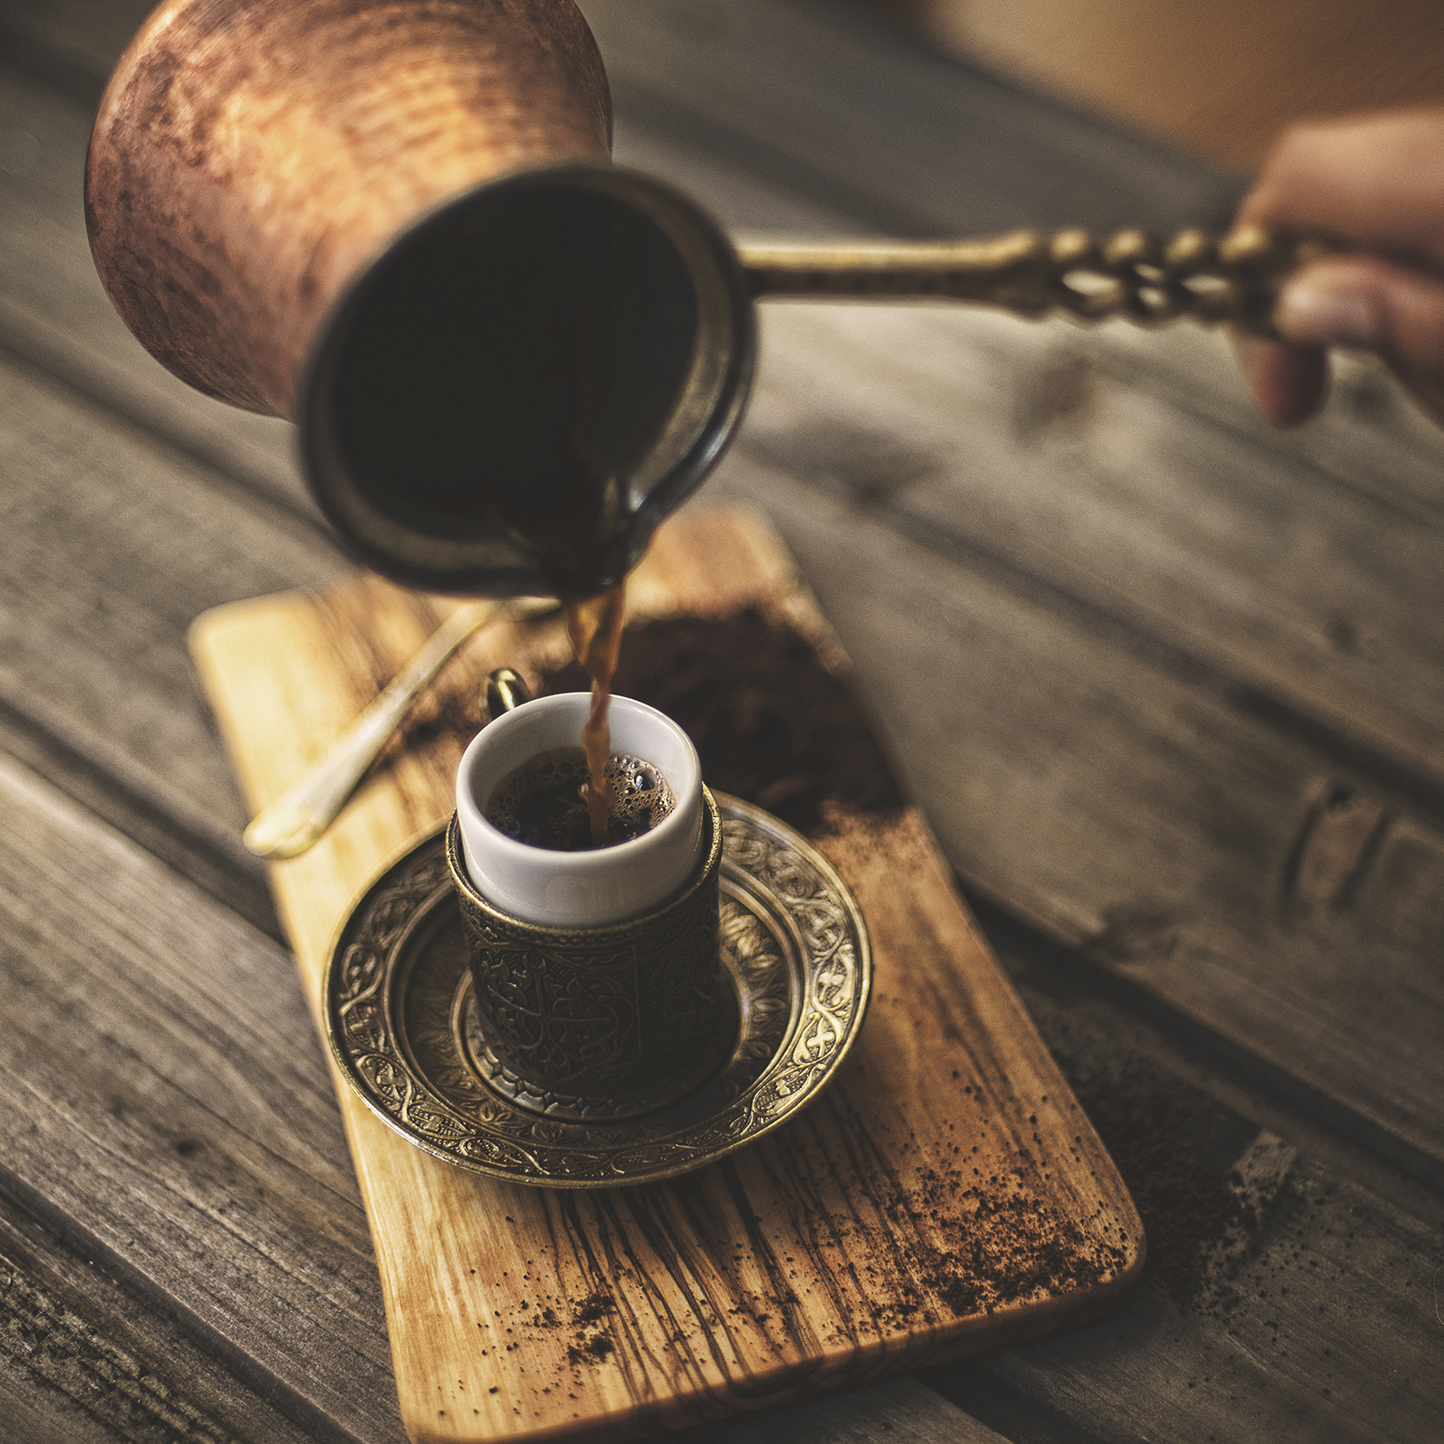 заваривание кофе в турке рецепт с фото | Дзен